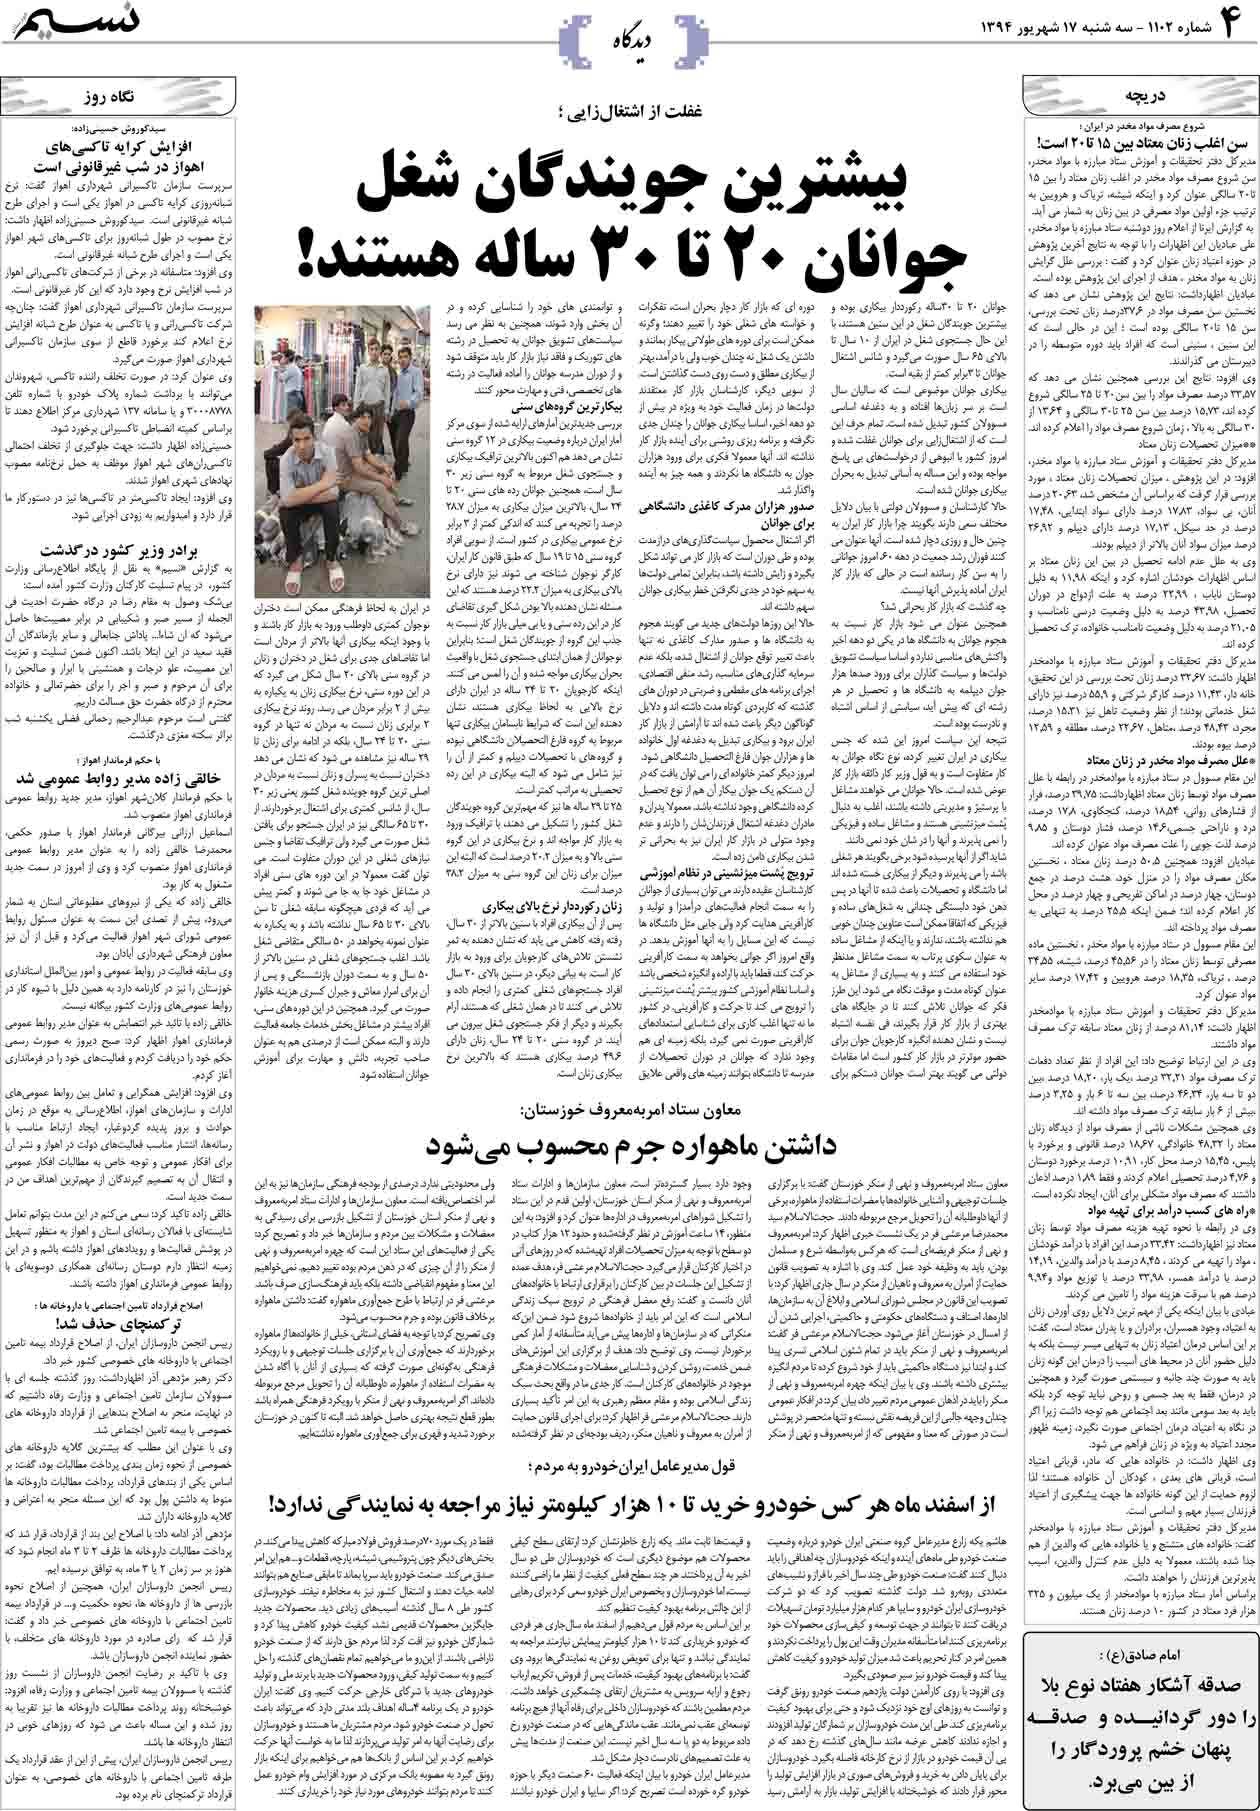 صفحه دیدگاه روزنامه نسیم شماره 1102